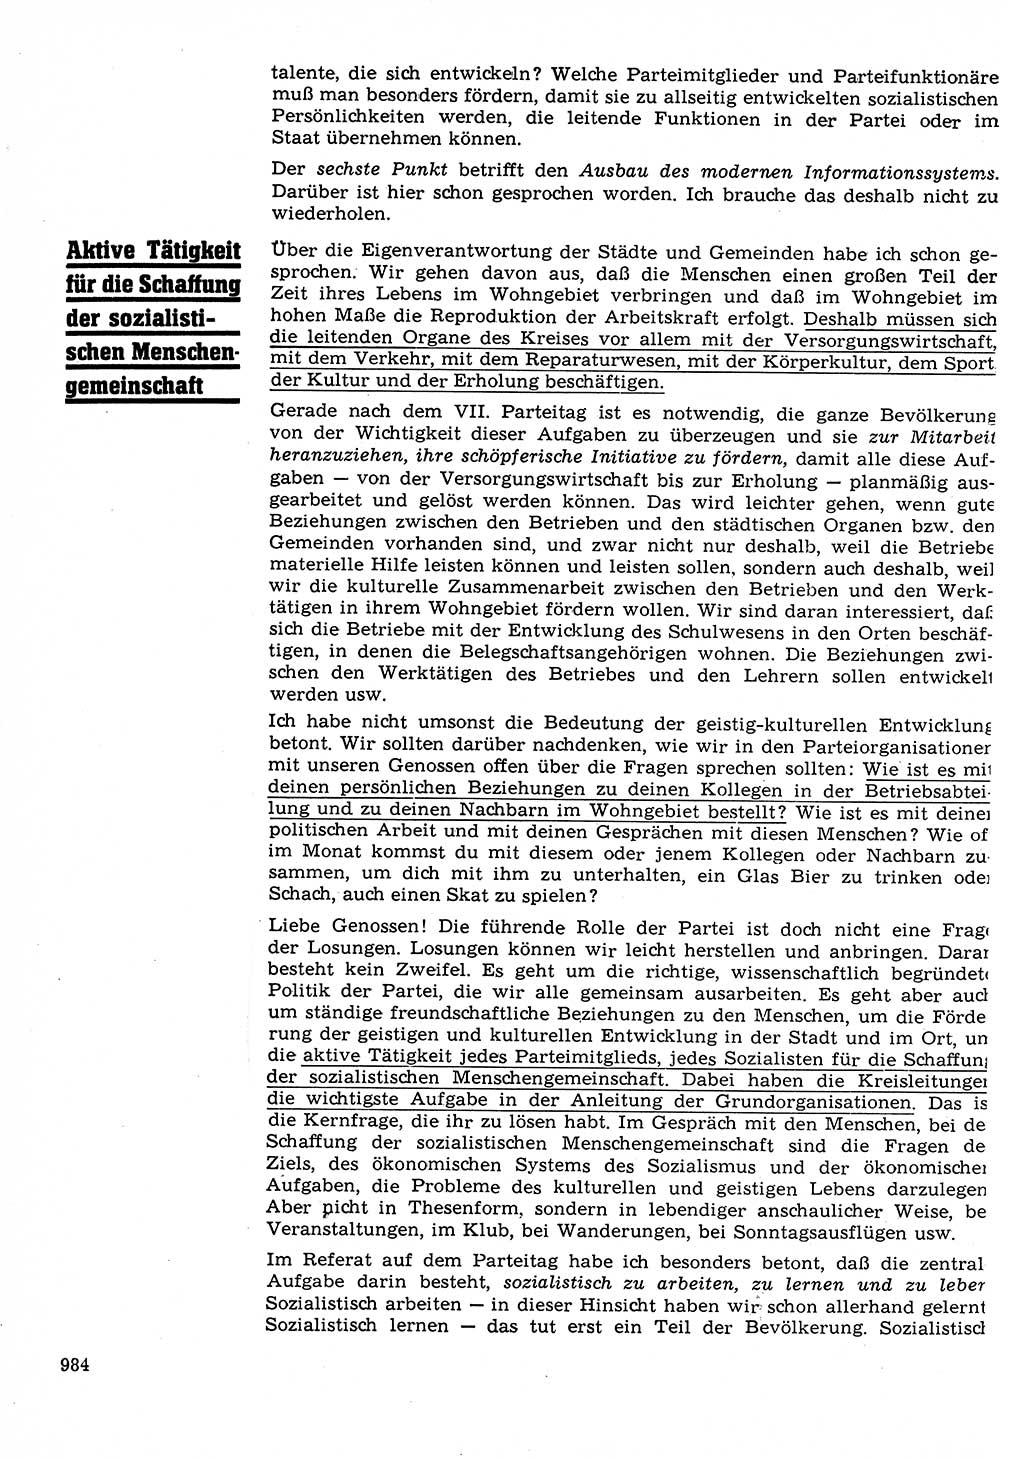 Neuer Weg (NW), Organ des Zentralkomitees (ZK) der SED (Sozialistische Einheitspartei Deutschlands) für Fragen des Parteilebens, 22. Jahrgang [Deutsche Demokratische Republik (DDR)] 1967, Seite 984 (NW ZK SED DDR 1967, S. 984)